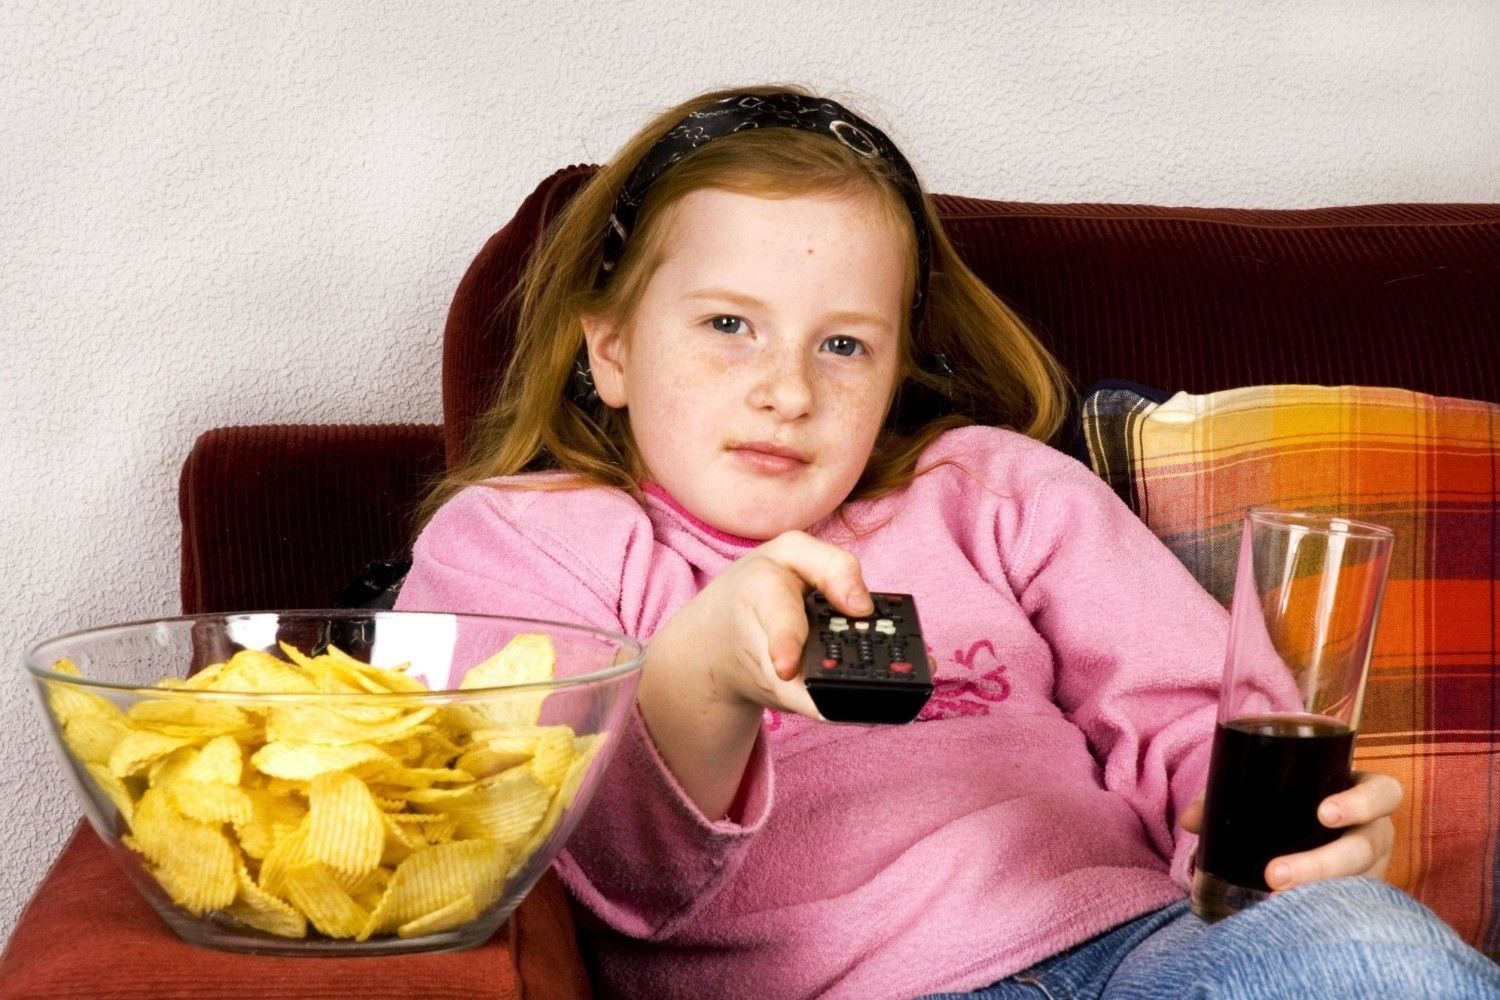 Meletakkan televisi di kamar anak bisa sebabkan obesitas